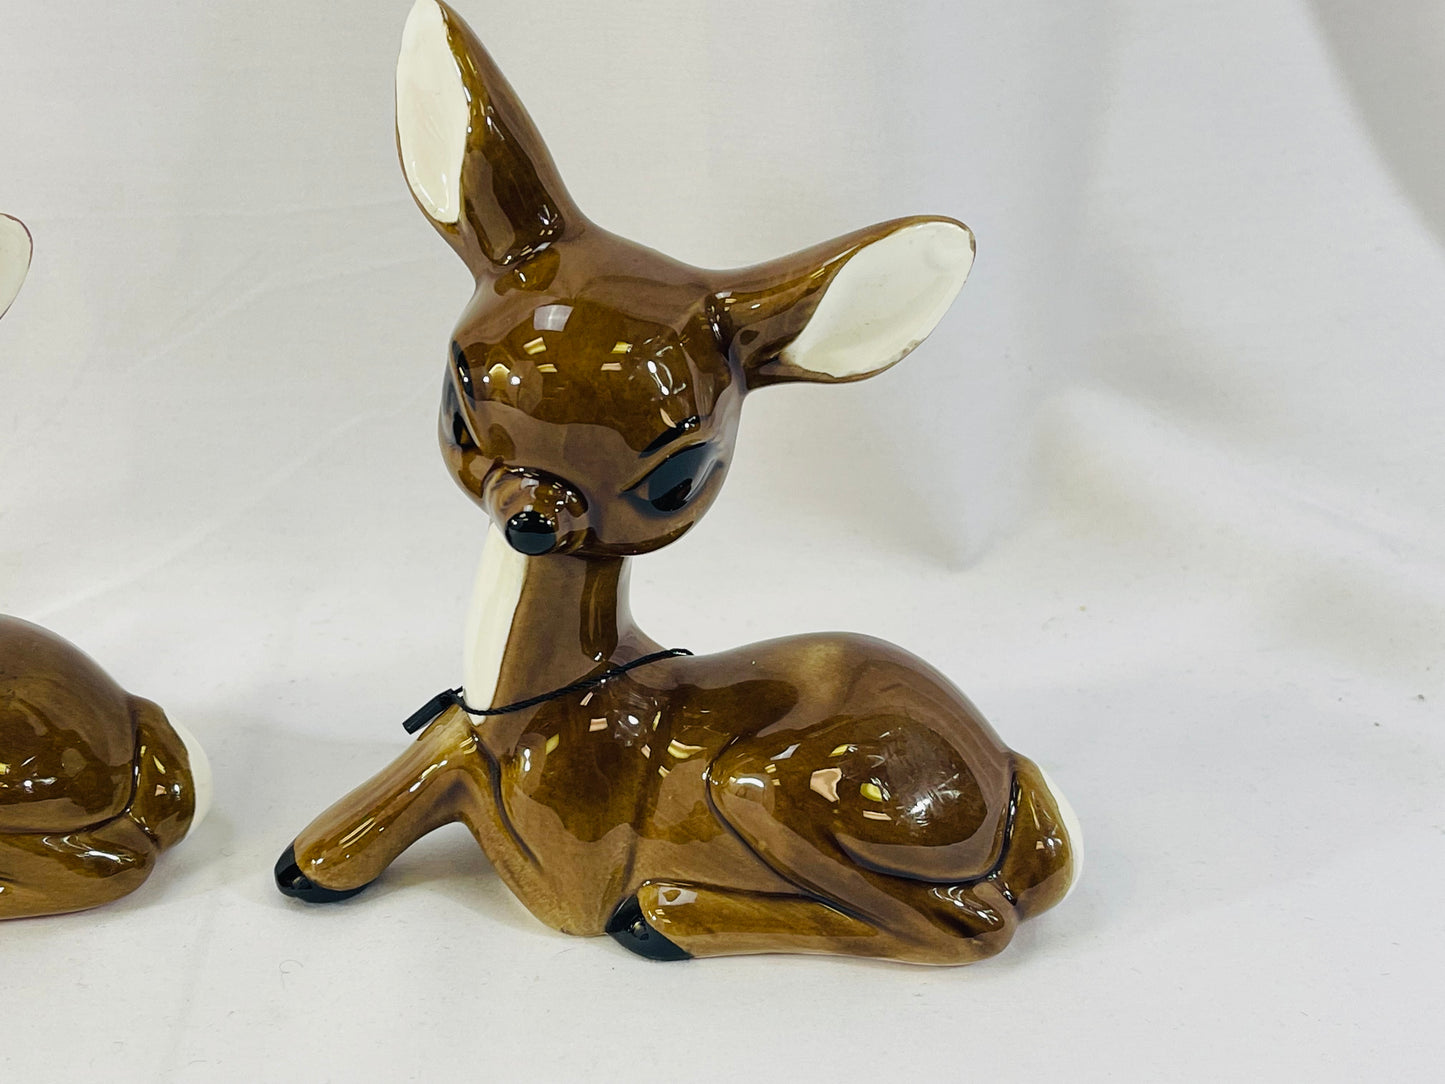 Vintage Duo of Ceramic Deer